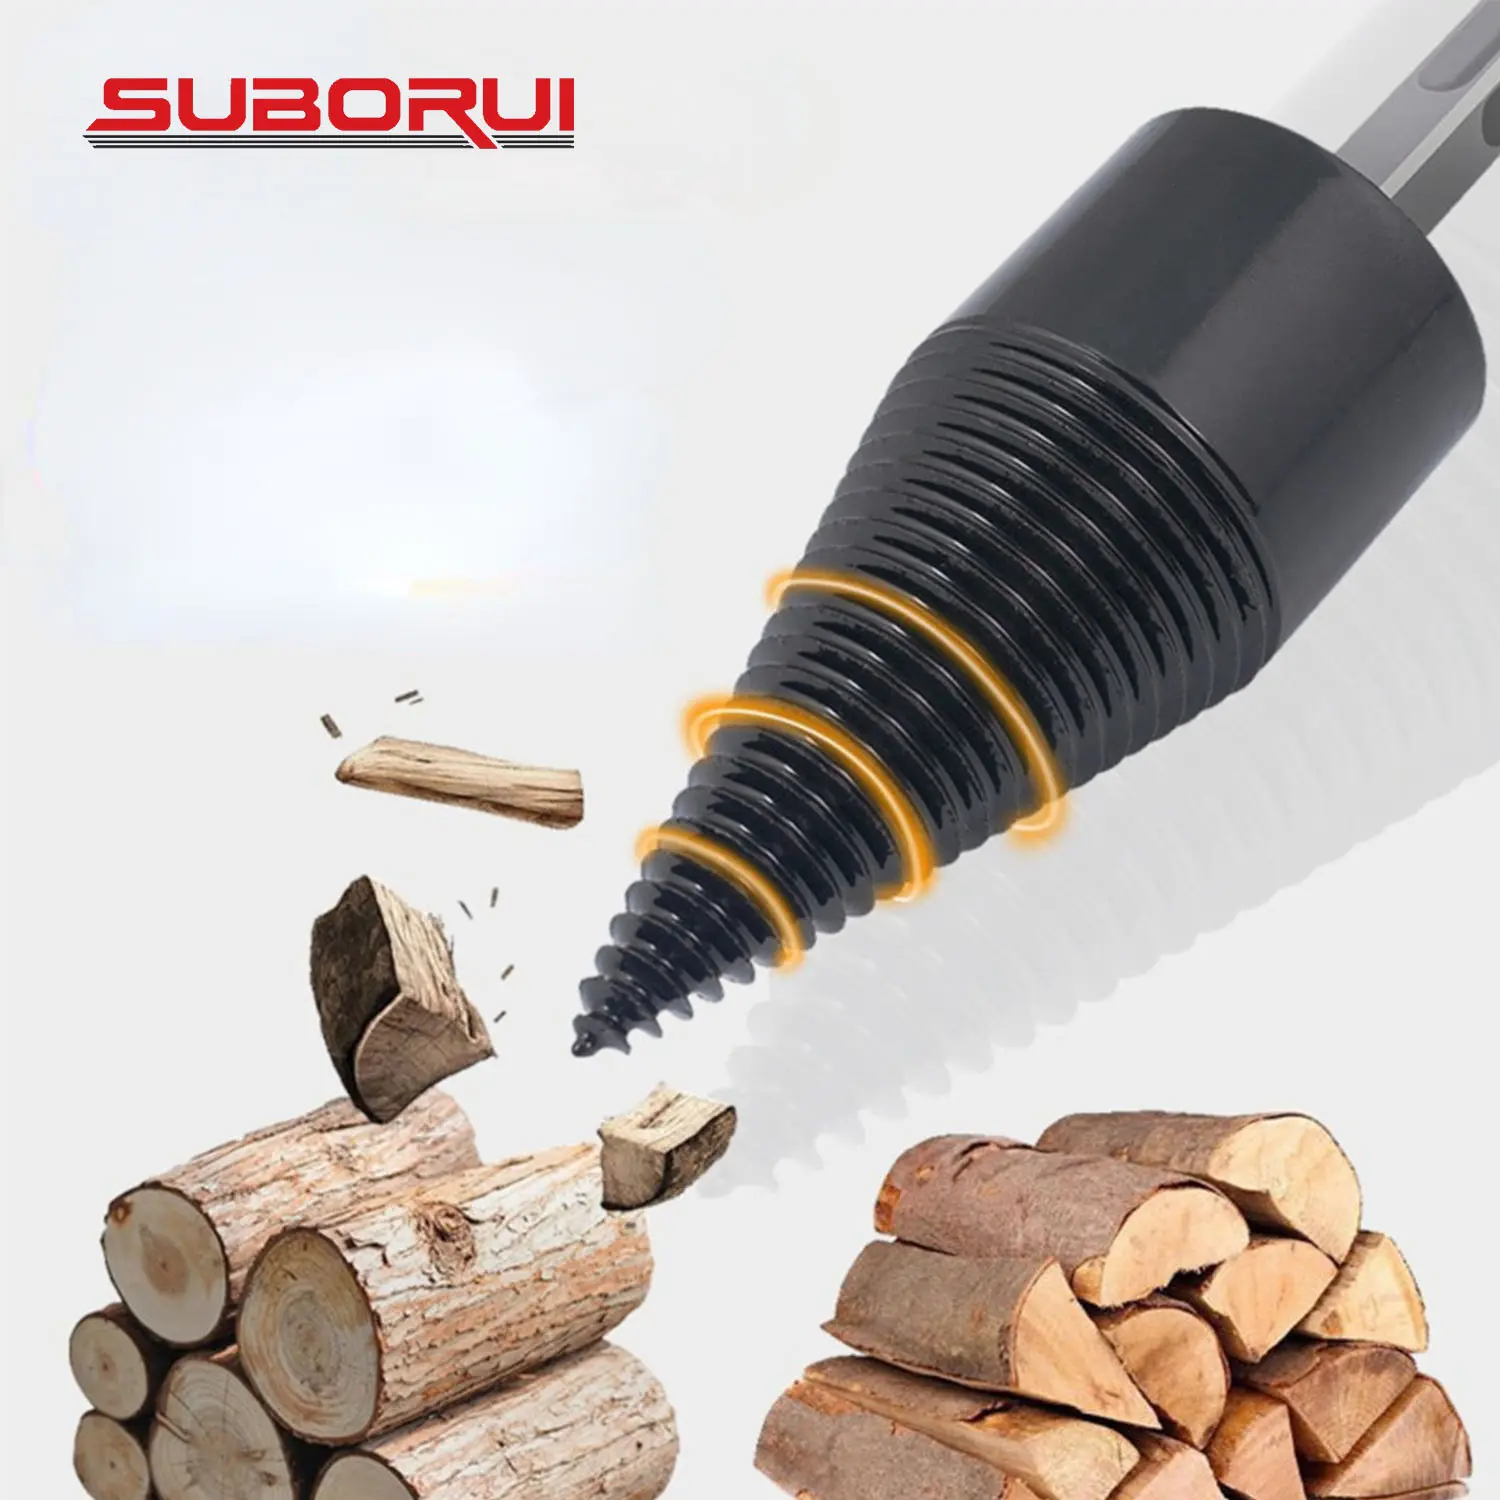 BORUI mata bor kayu bakar, mata bor kerucut terpisah kayu Splitter 32 42 45 50mm persegi bulat untuk memotong pohon